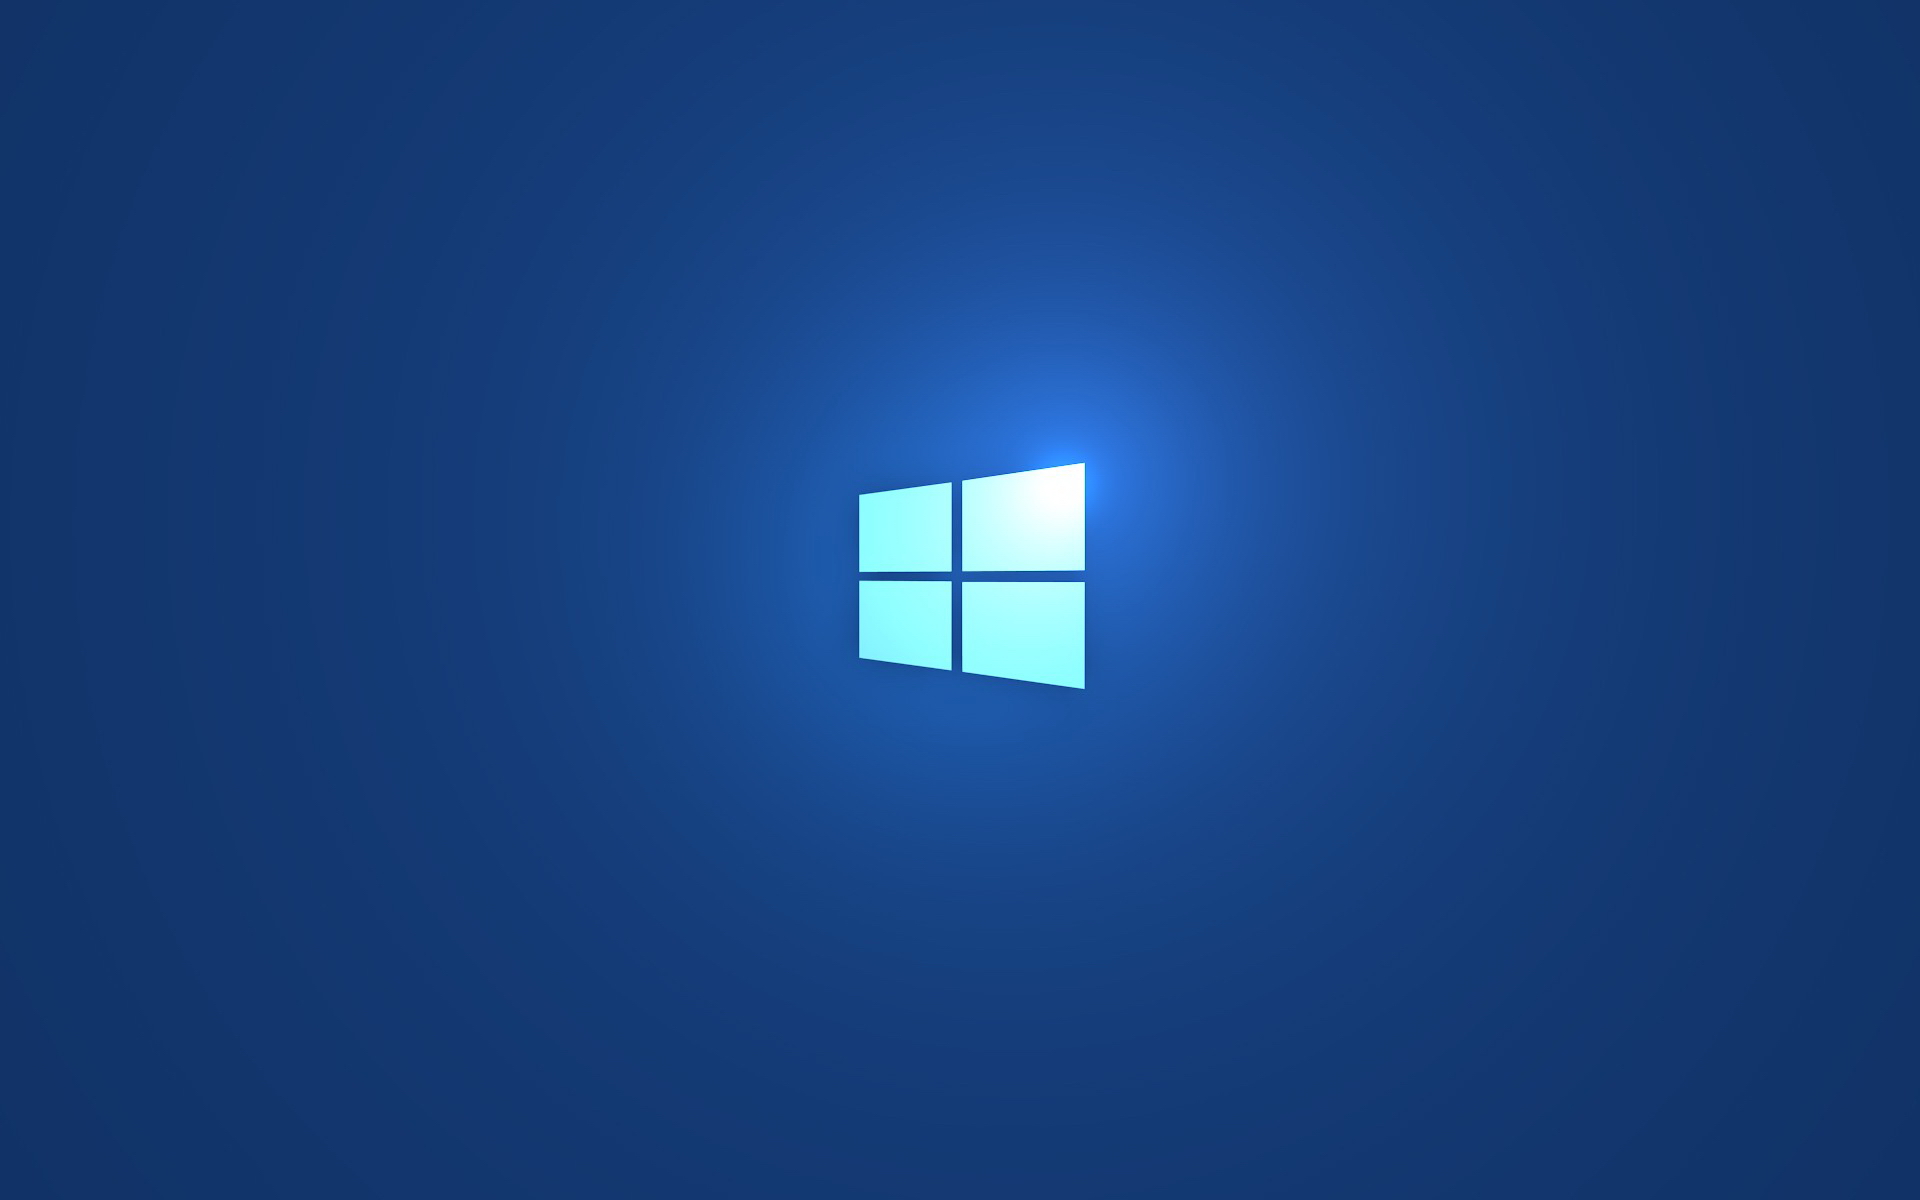 Meilleurs fonds d'écran Windows 8 1 pour l'écran du téléphone